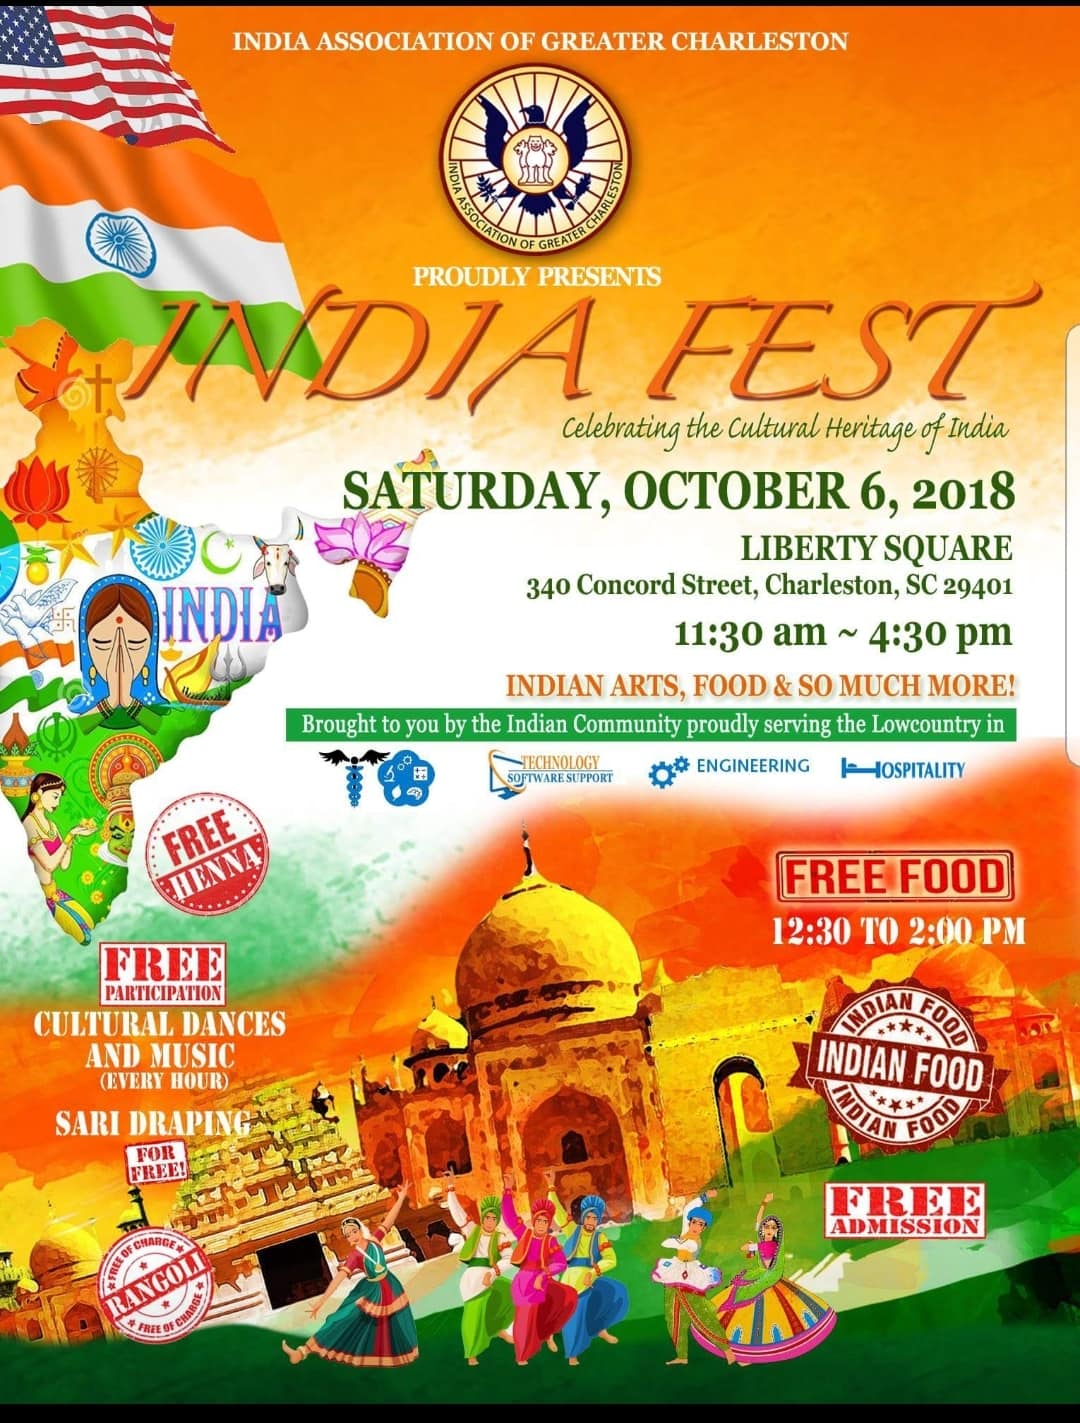 India Fest